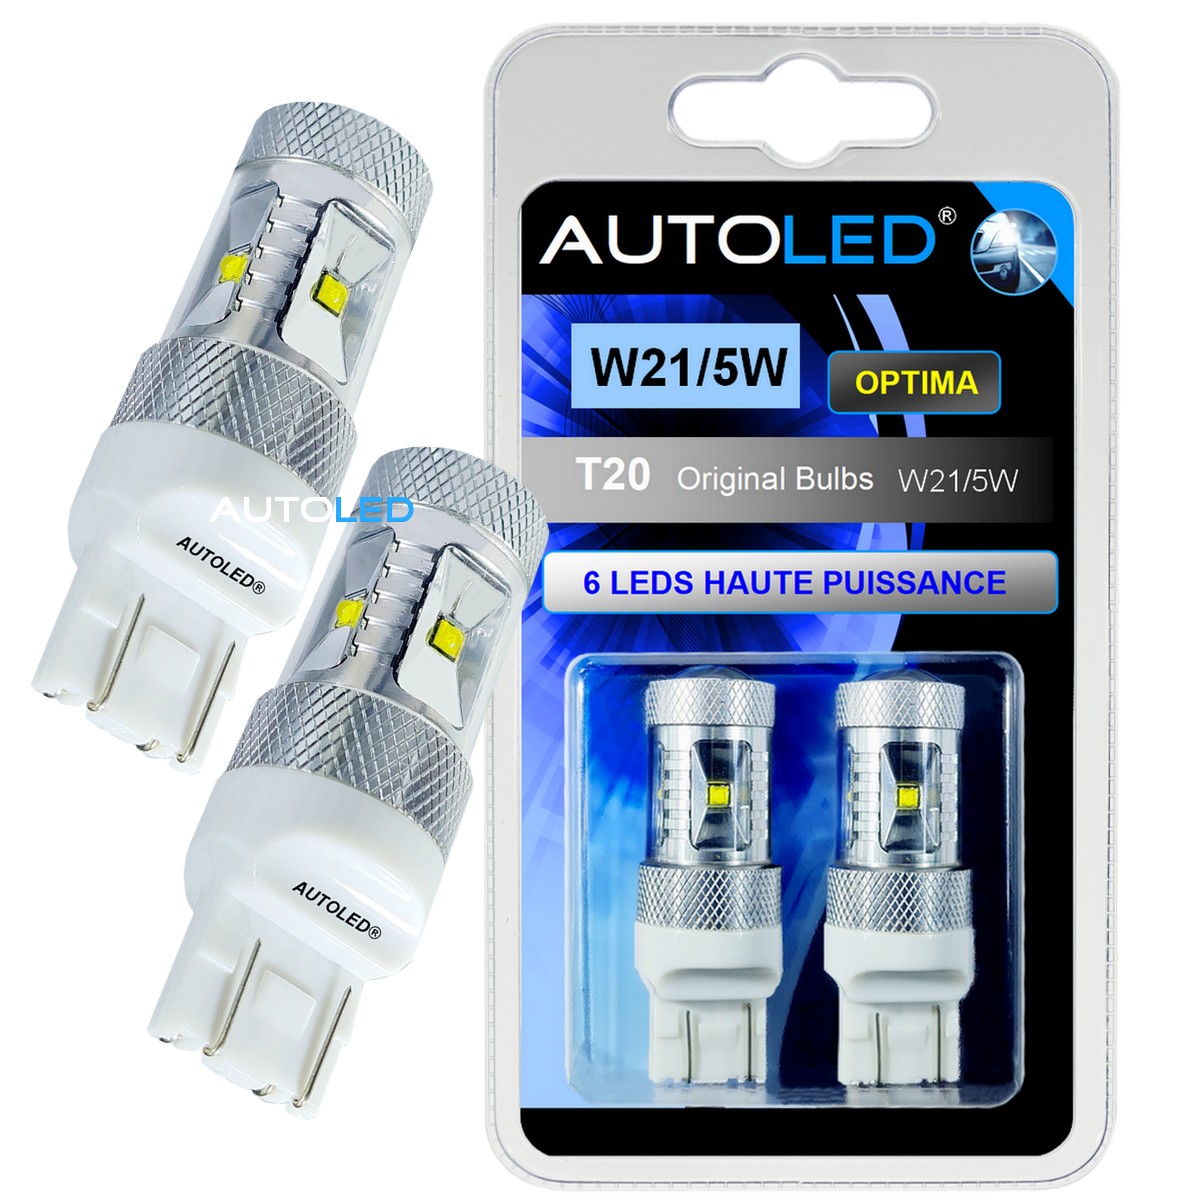 LED H11 6 LEDS HAUTE PUISSANCE BLANC - AUTOLED ®